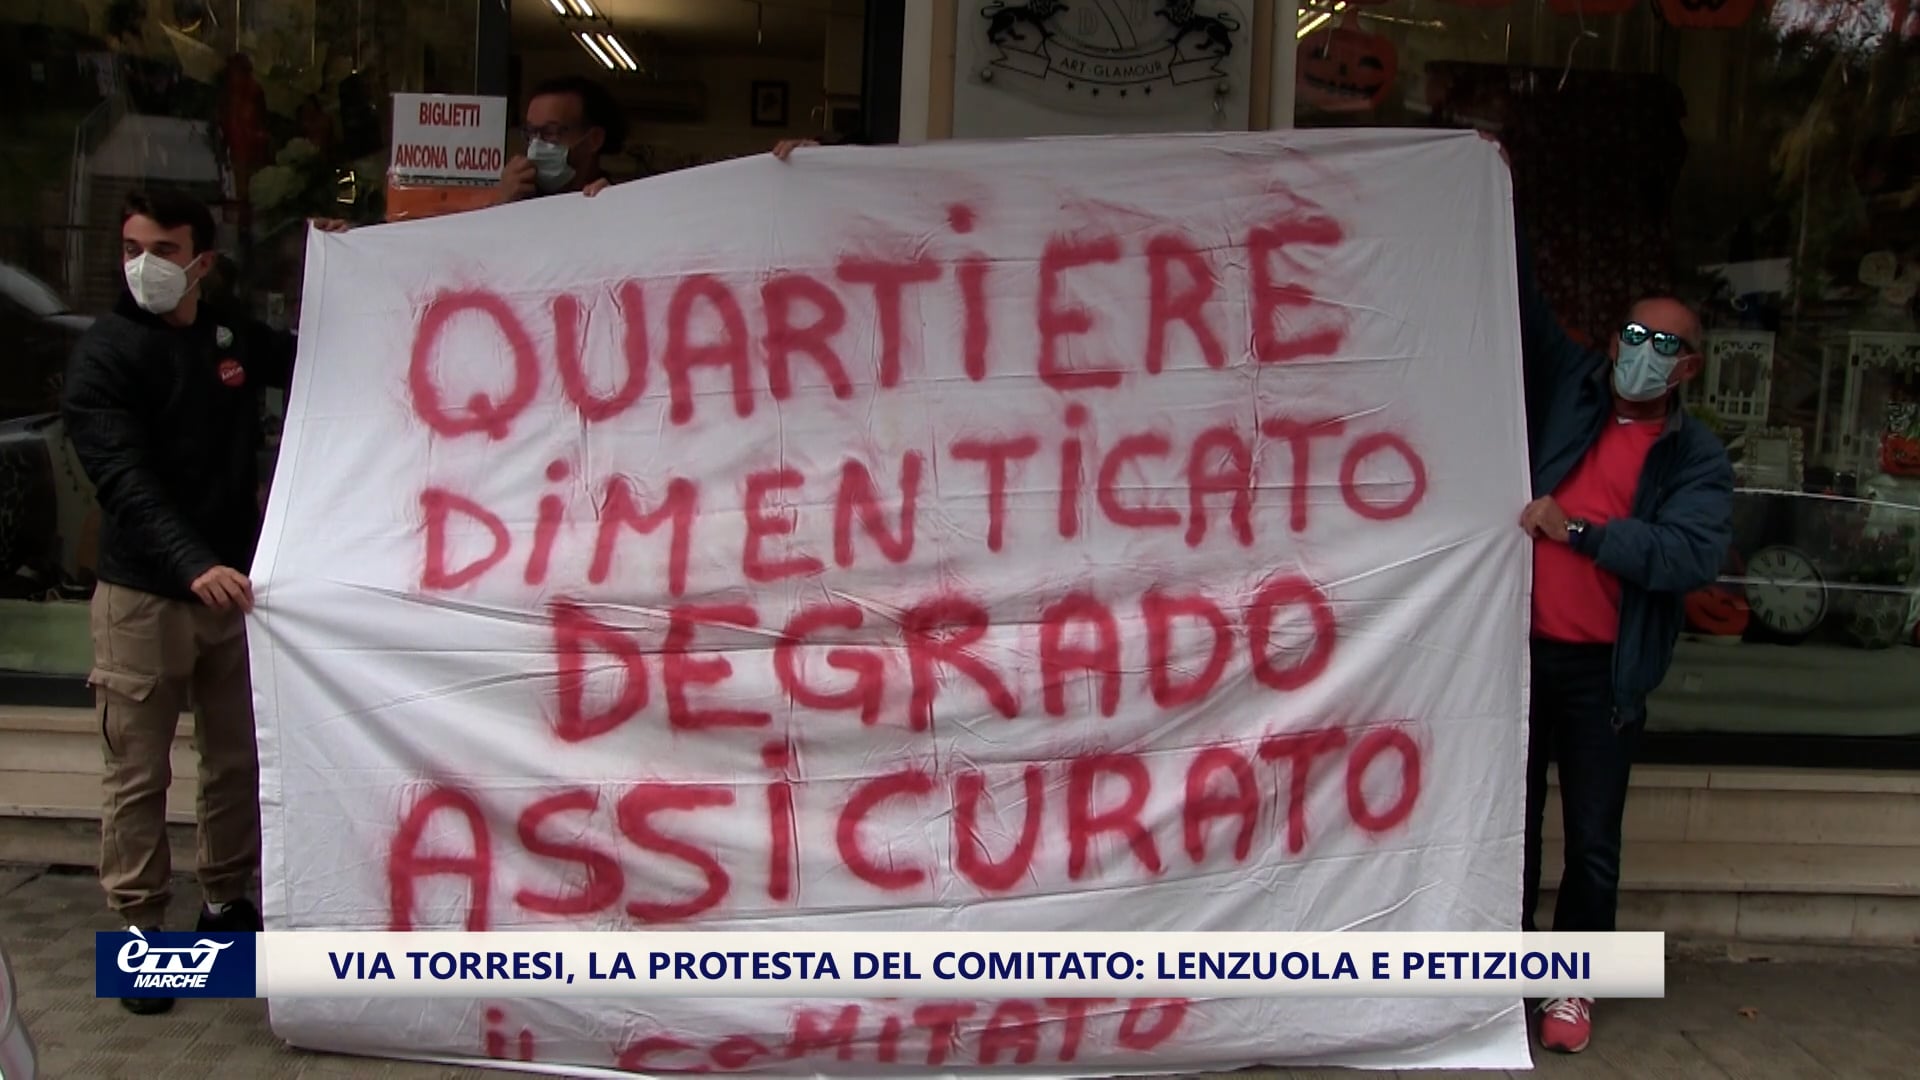 Via Torresi, la protesta del Comitato: lenzuola e petizioni